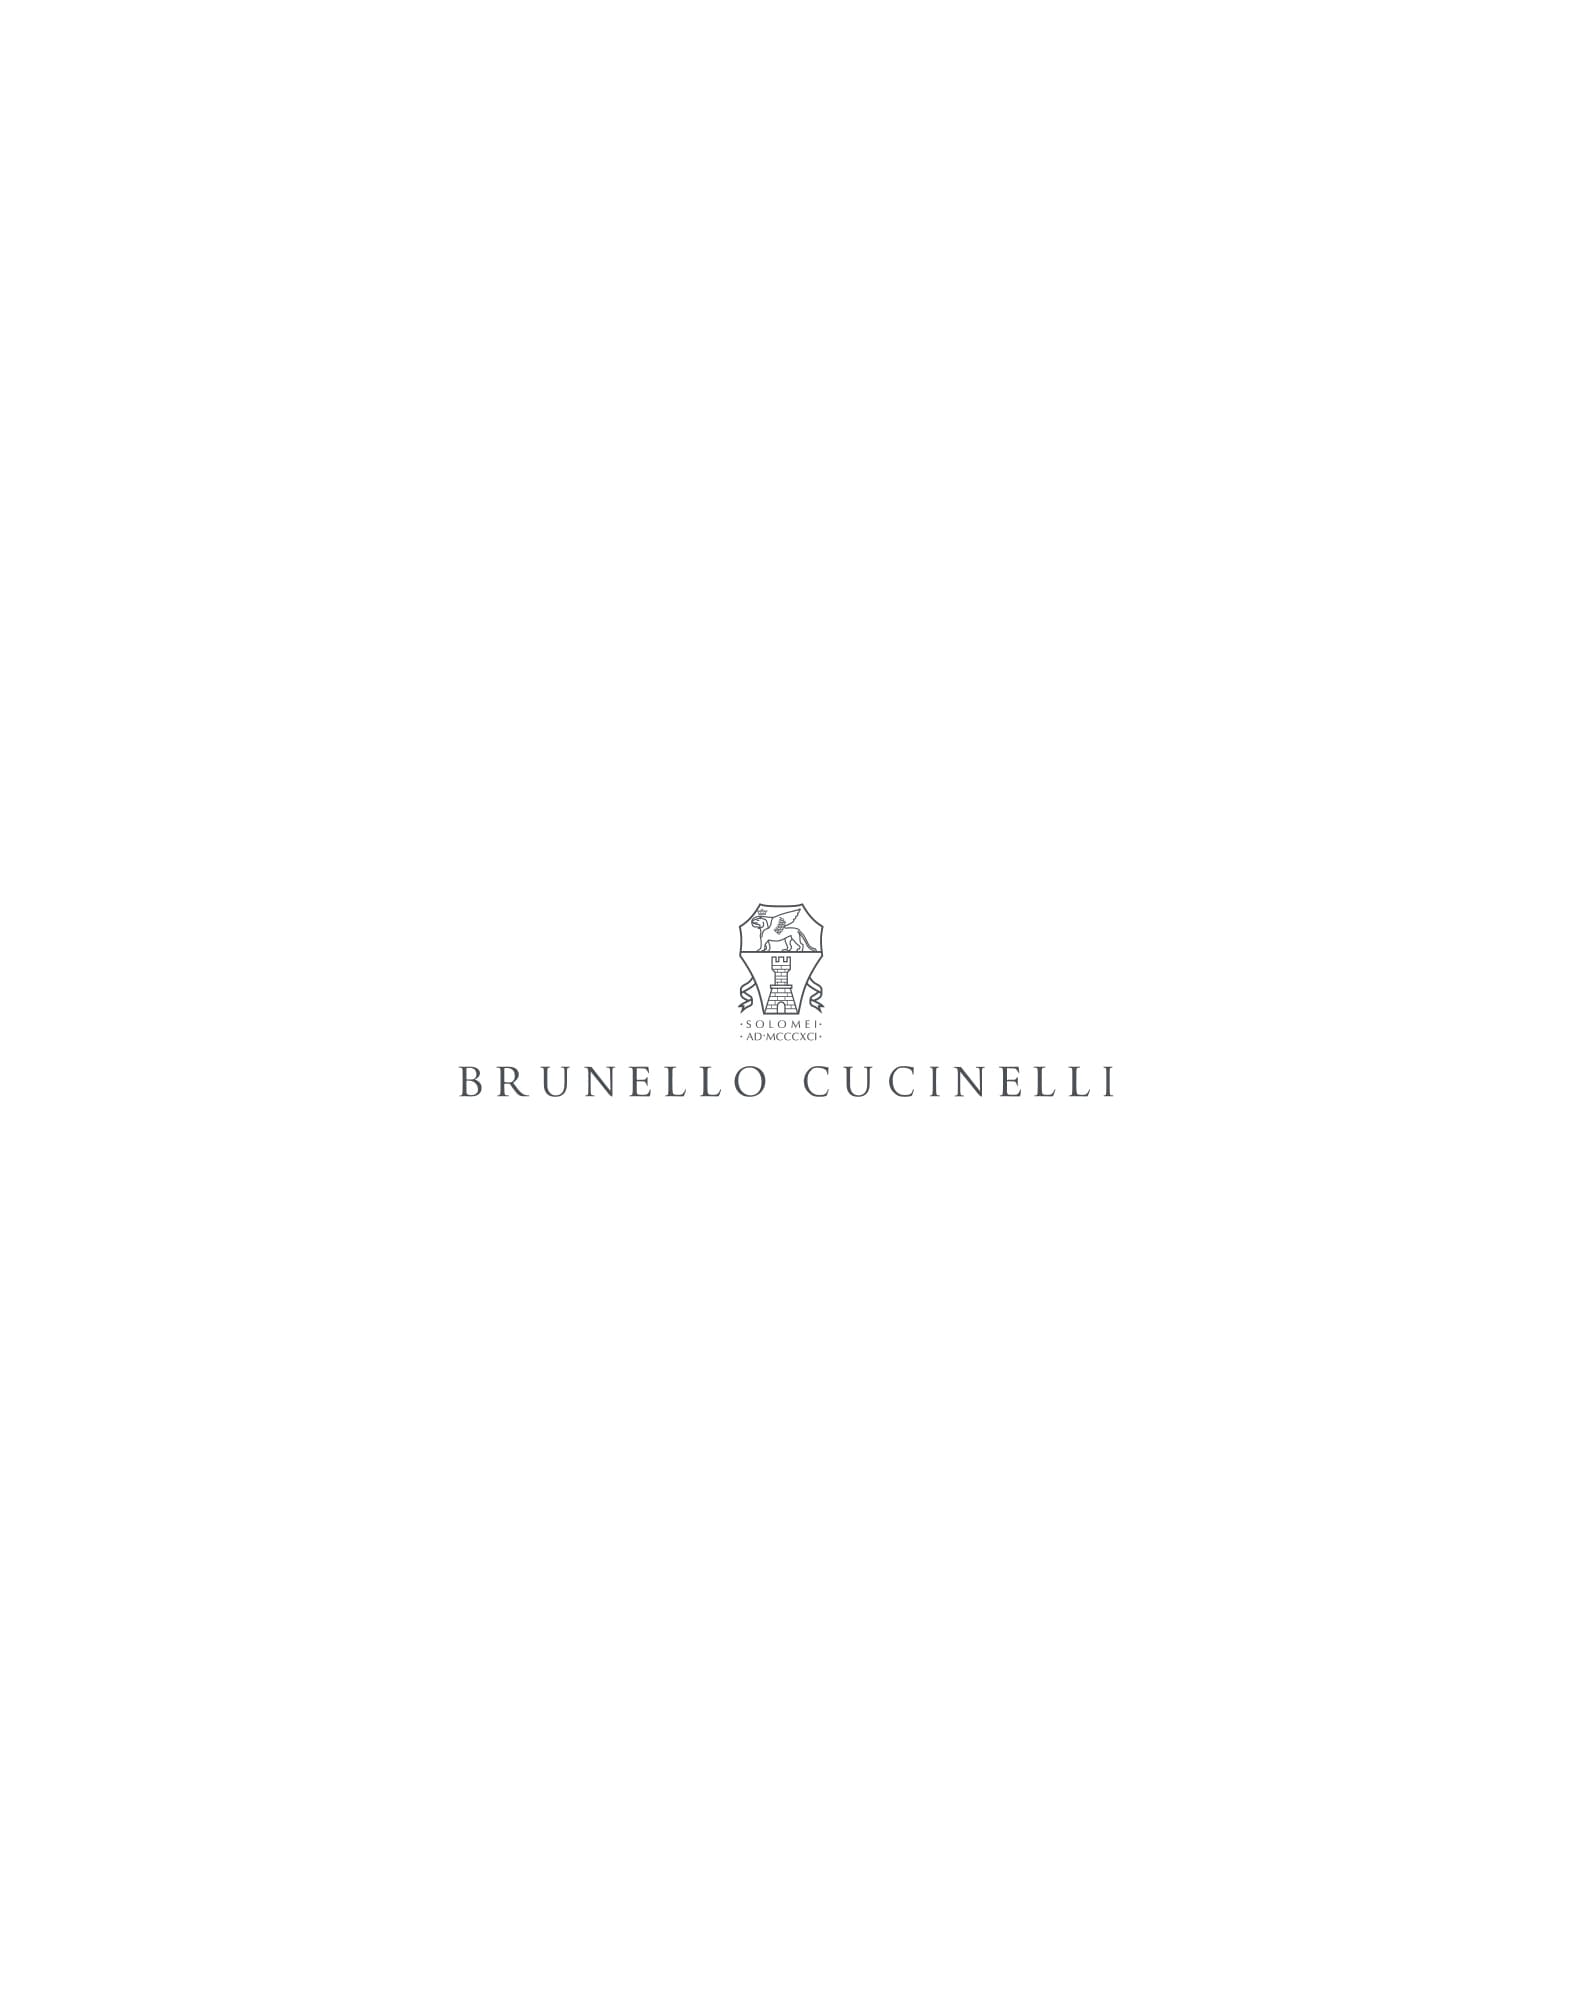 Suede sneakers Lignite Woman - Brunello Cucinelli 